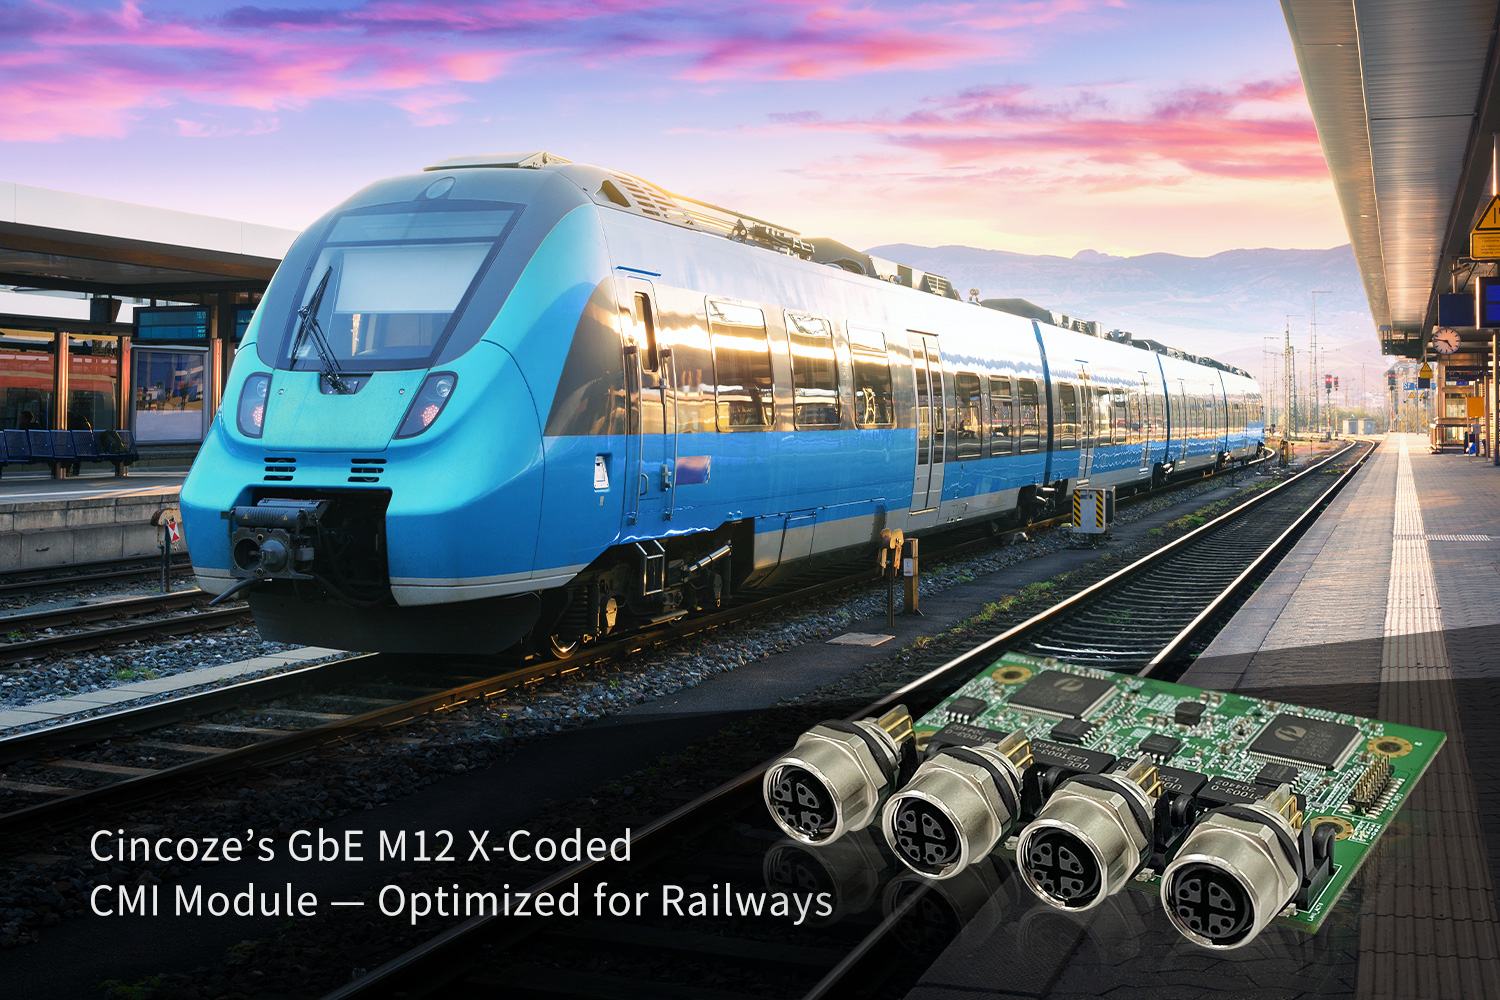 德承新开发M12 X-型 CMI模块 优化轨道交通的传输效能